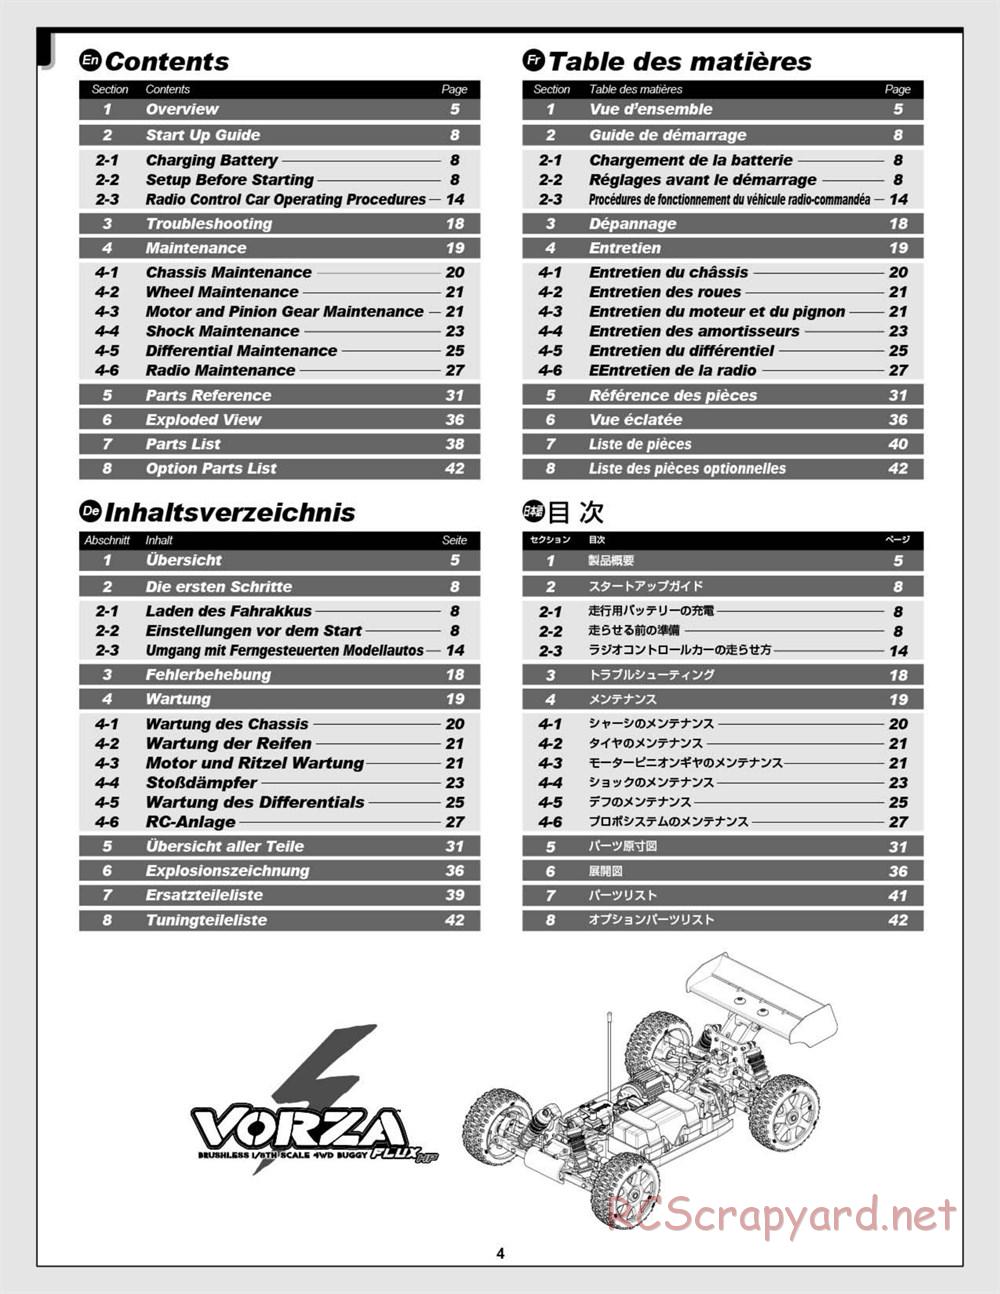 HPI - Vorza Flux HP - Manual - Page 4